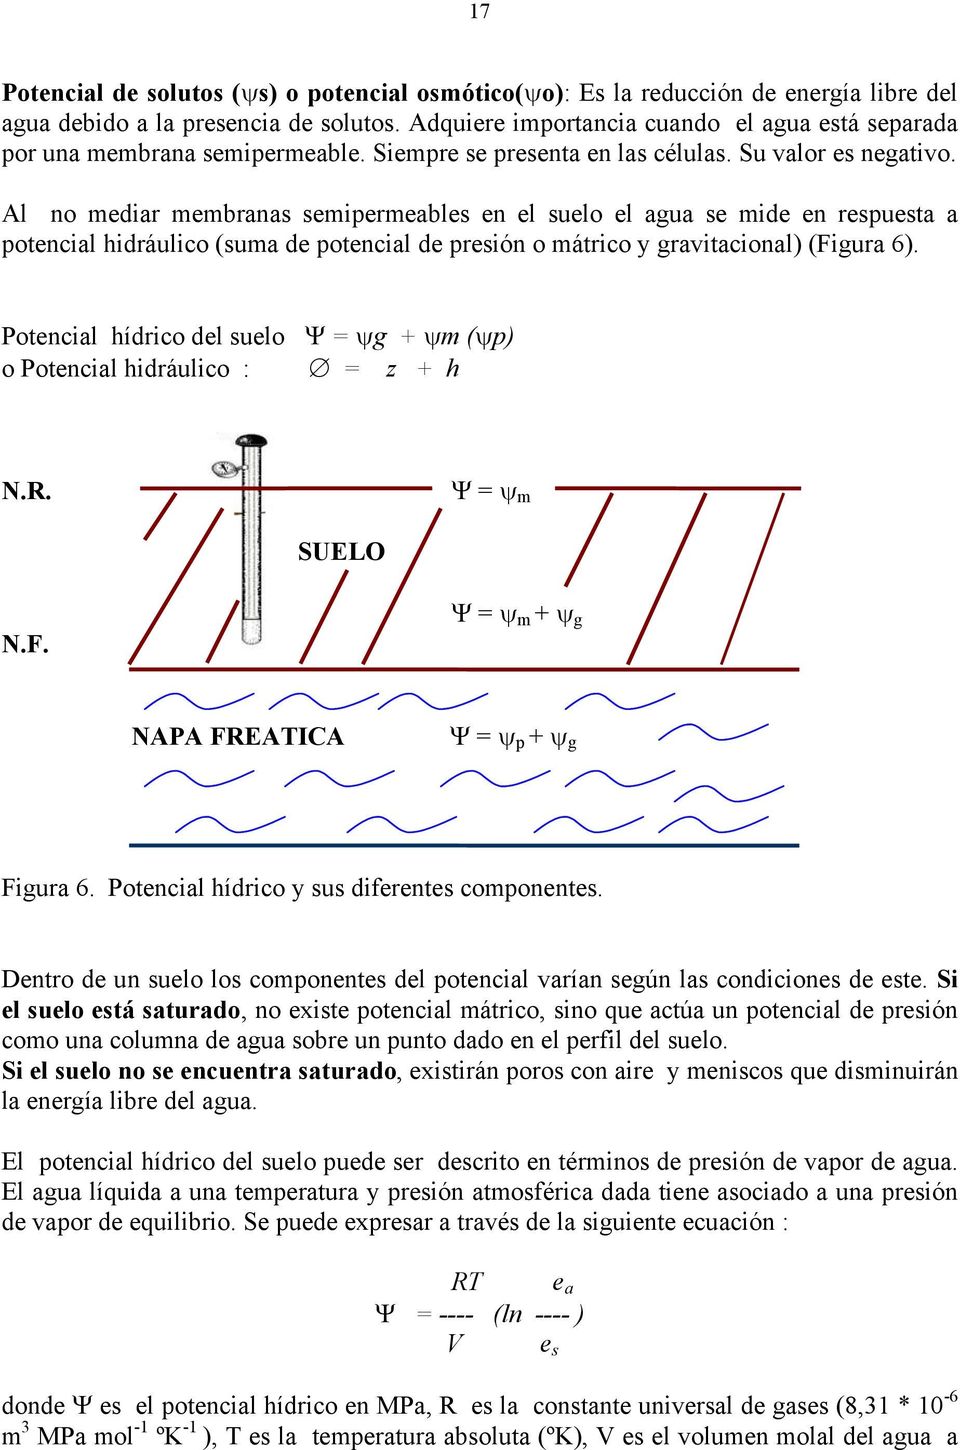 Al no mediar membranas semipermeables en el suelo el agua se mide en respuesta a potencial hidráulico (suma de potencial de presión o mátrico y gravitacional) (Figura 6).